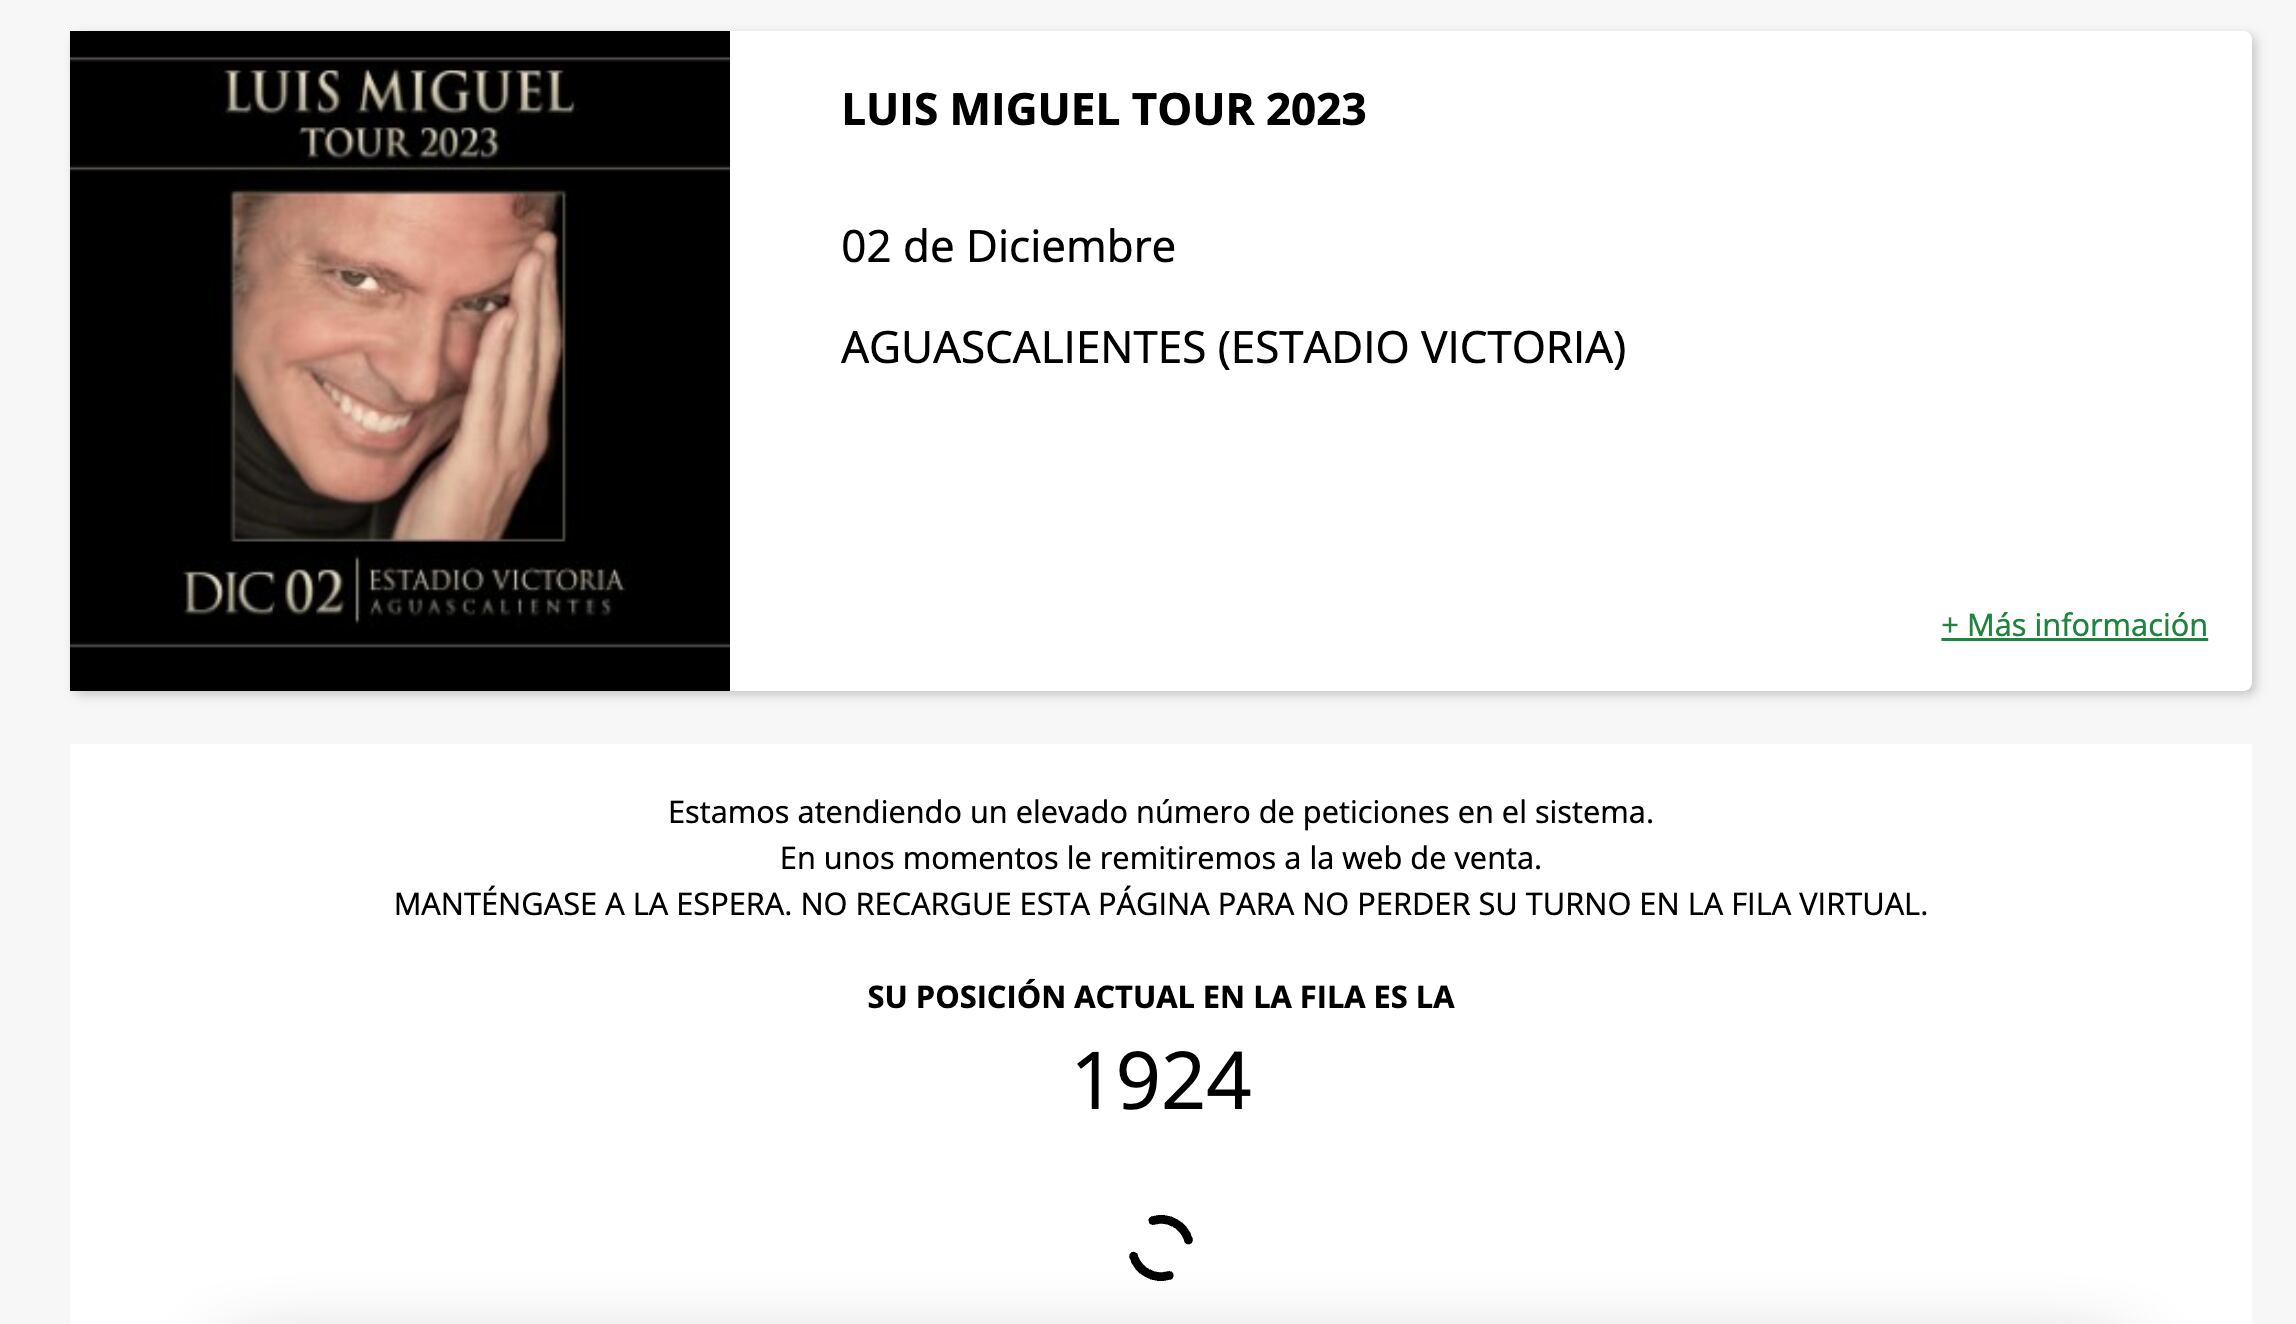 Fila Virtual para el concierto de Luis Miguel en Aguascalientes el próximo 2 de diciembre.